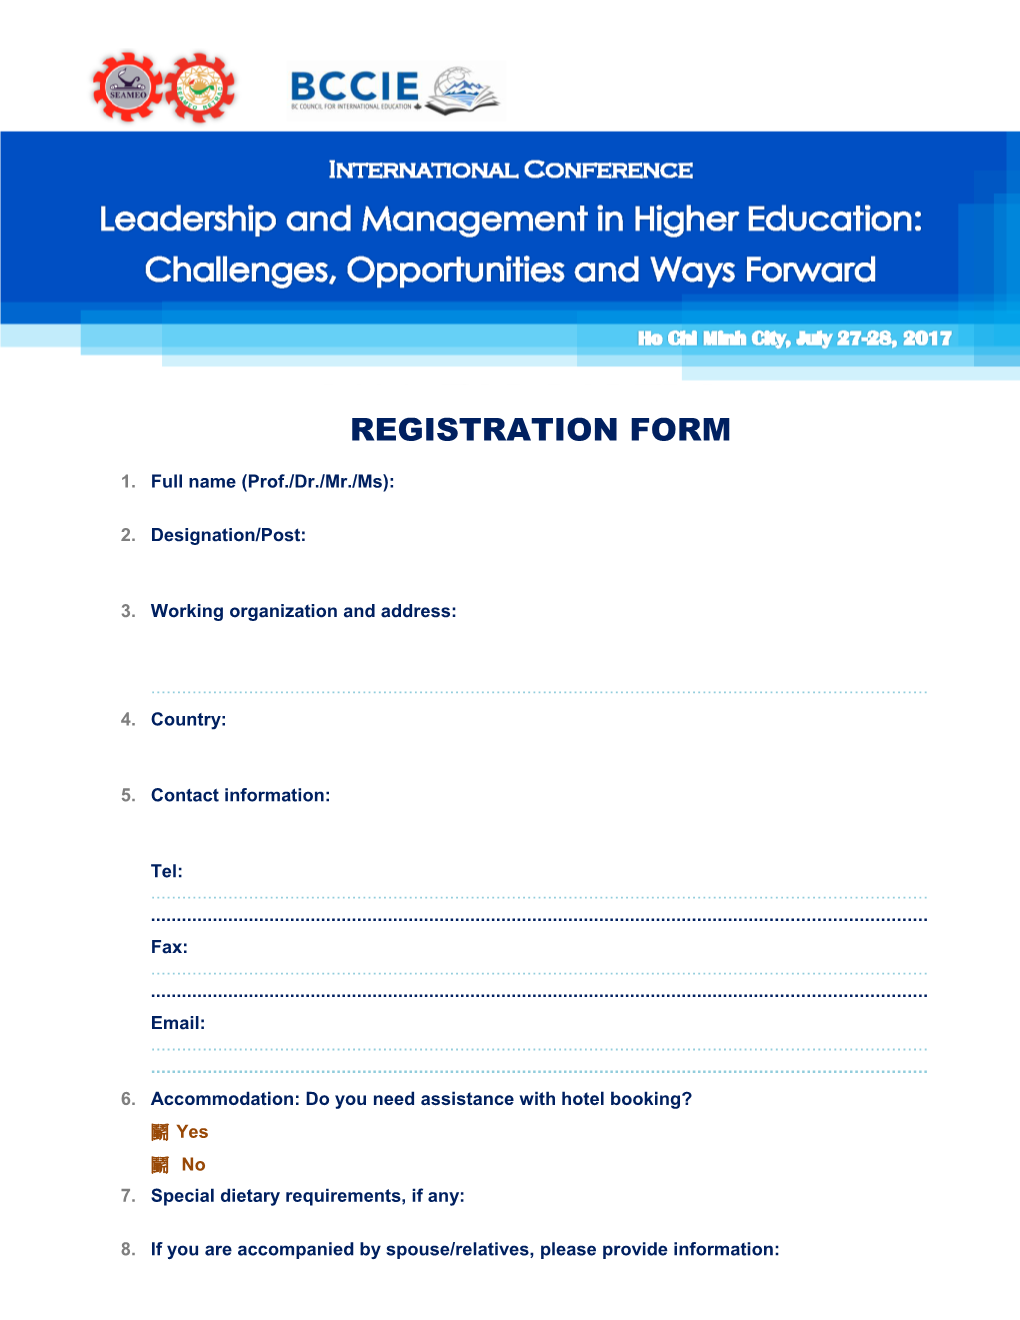 Registration Form s9